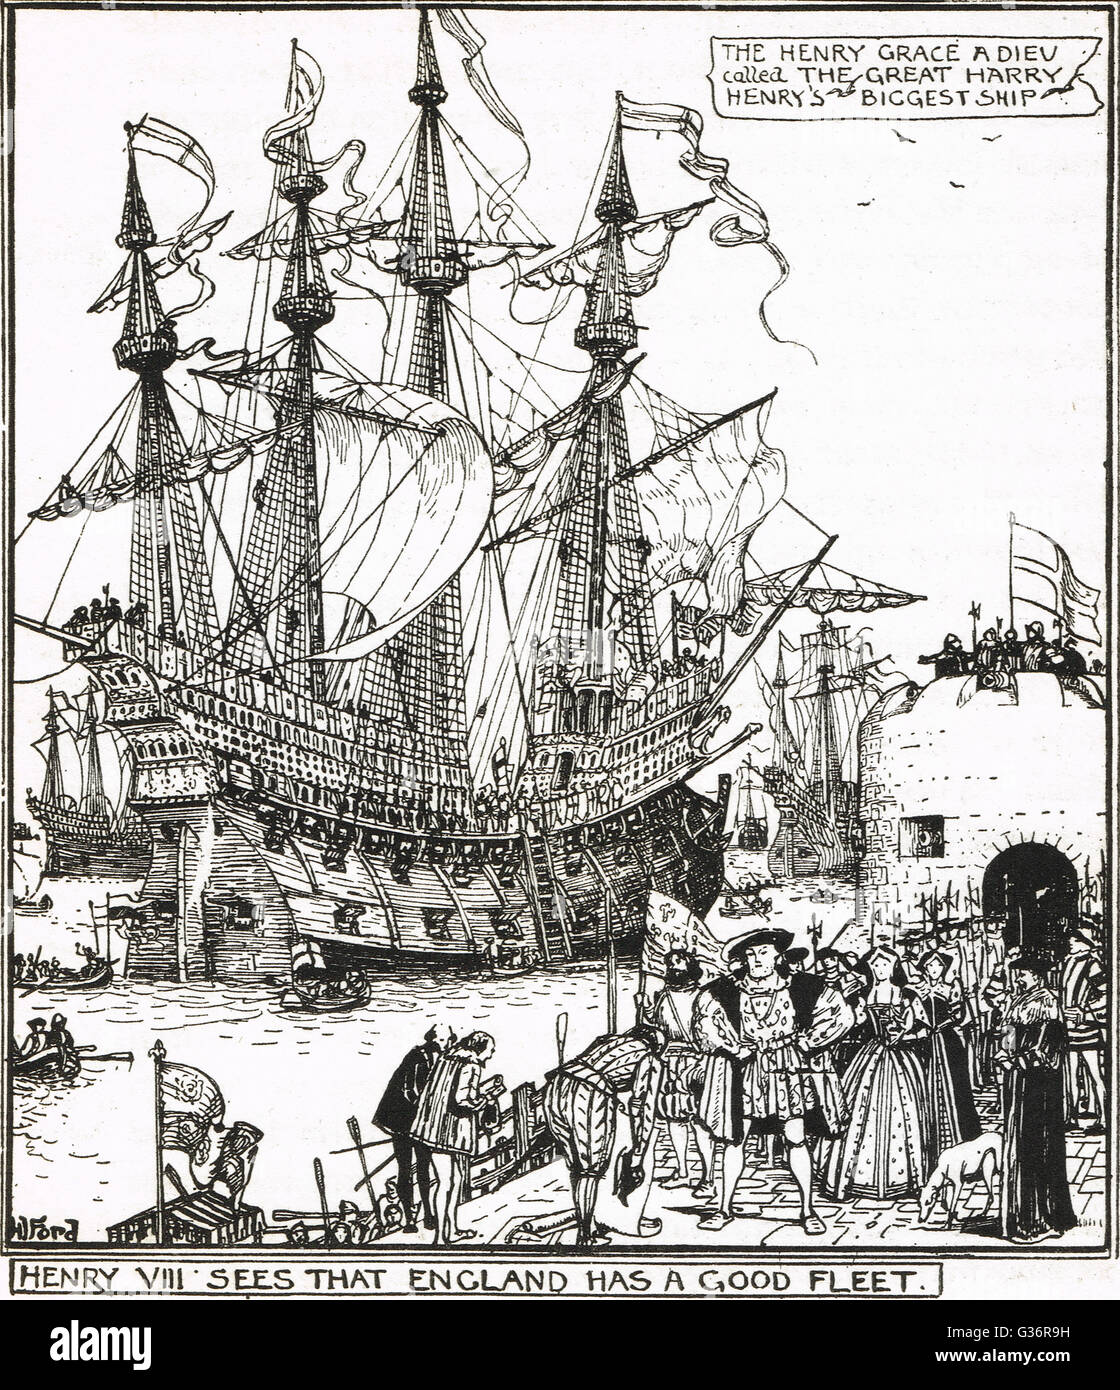 Enrico grazia un dieu (henry grazia di Dio) aka ottimo Harry. Henry VIII il più grande nave e un contemporaneo della Mary rose. Foto Stock